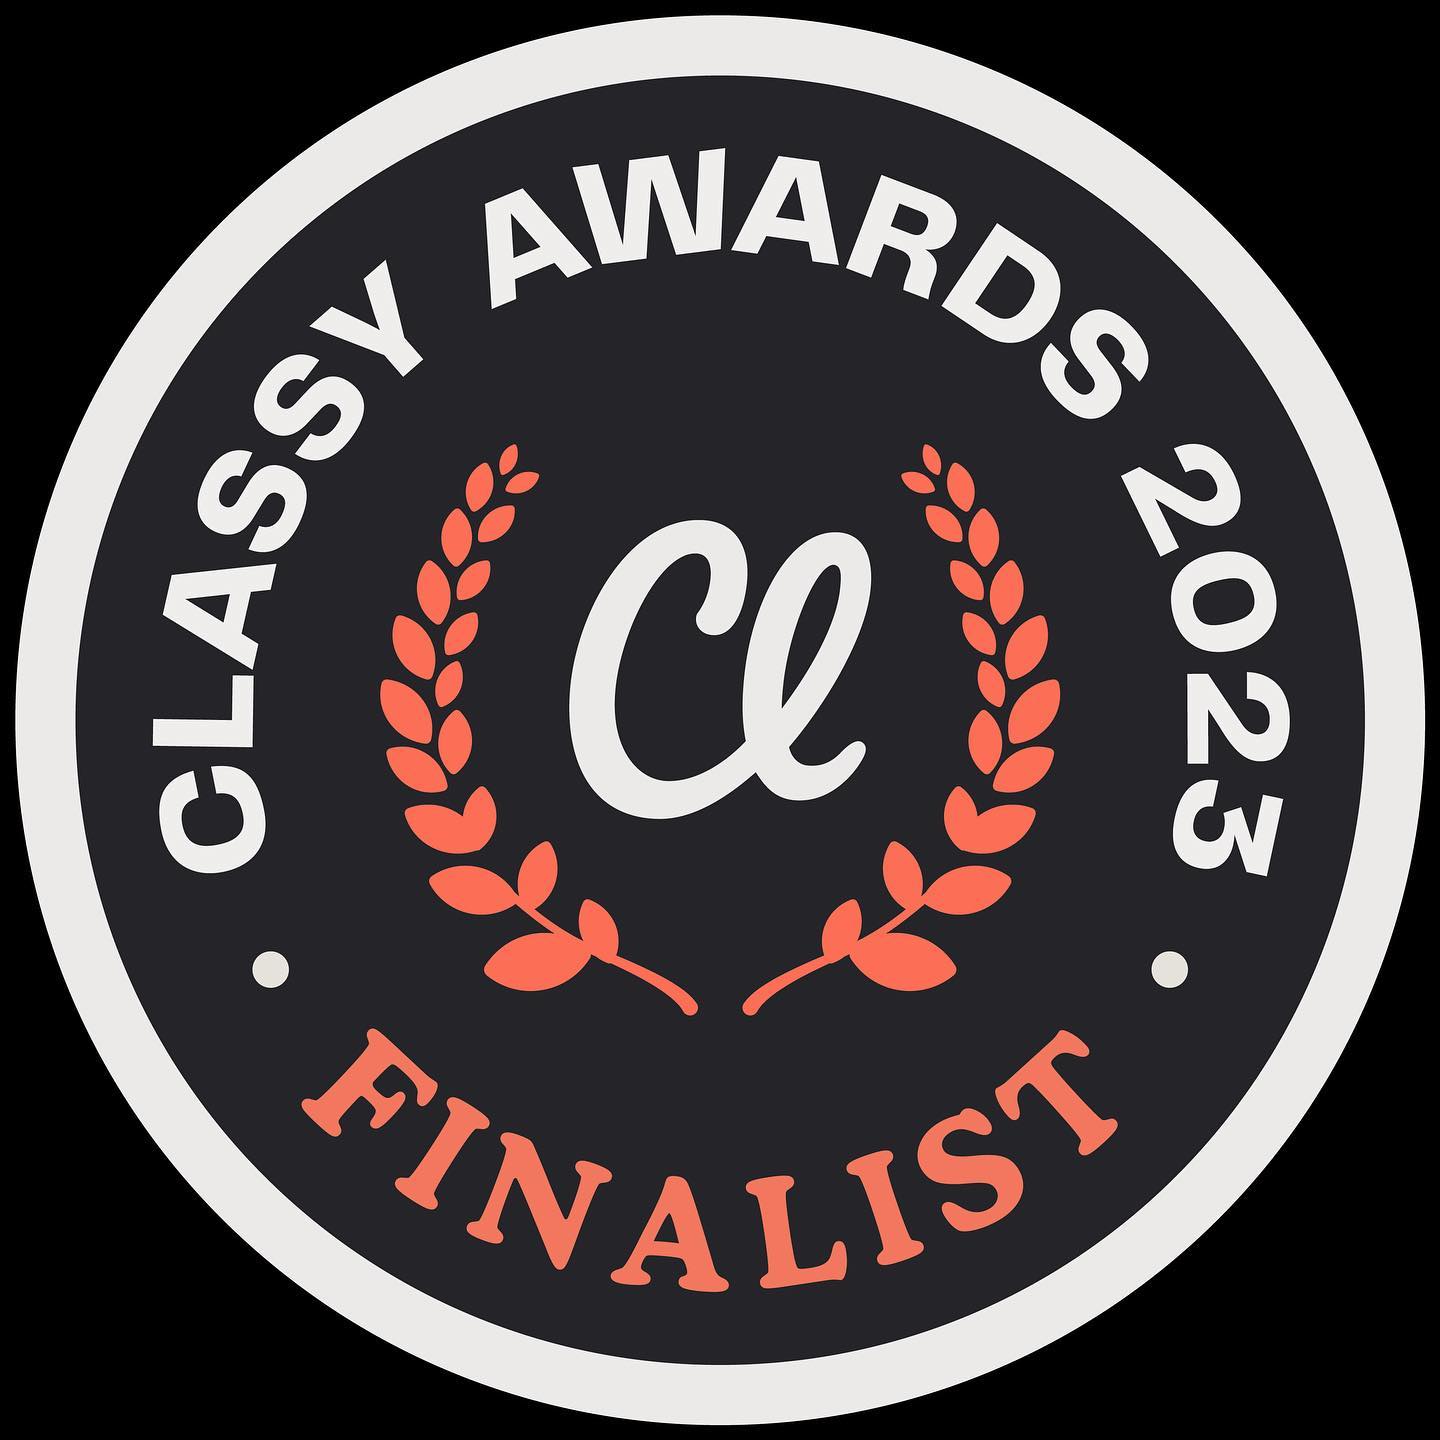 the classy awards logo.